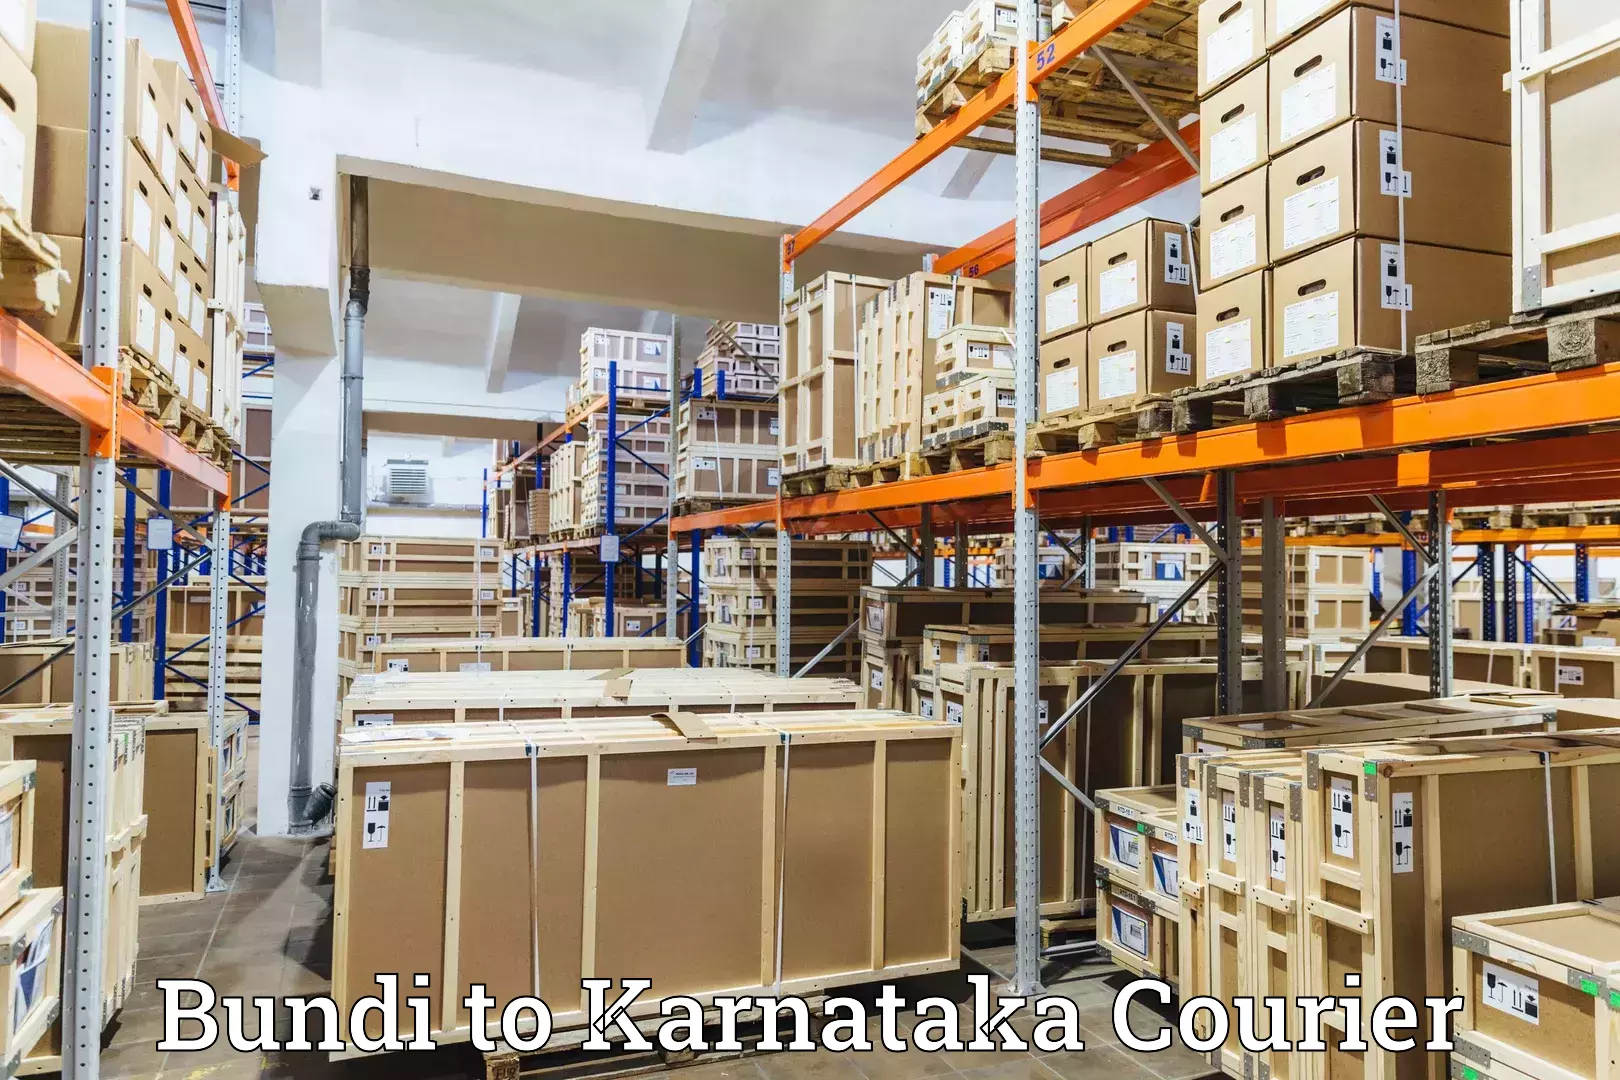 Online courier booking Bundi to Kanakapura